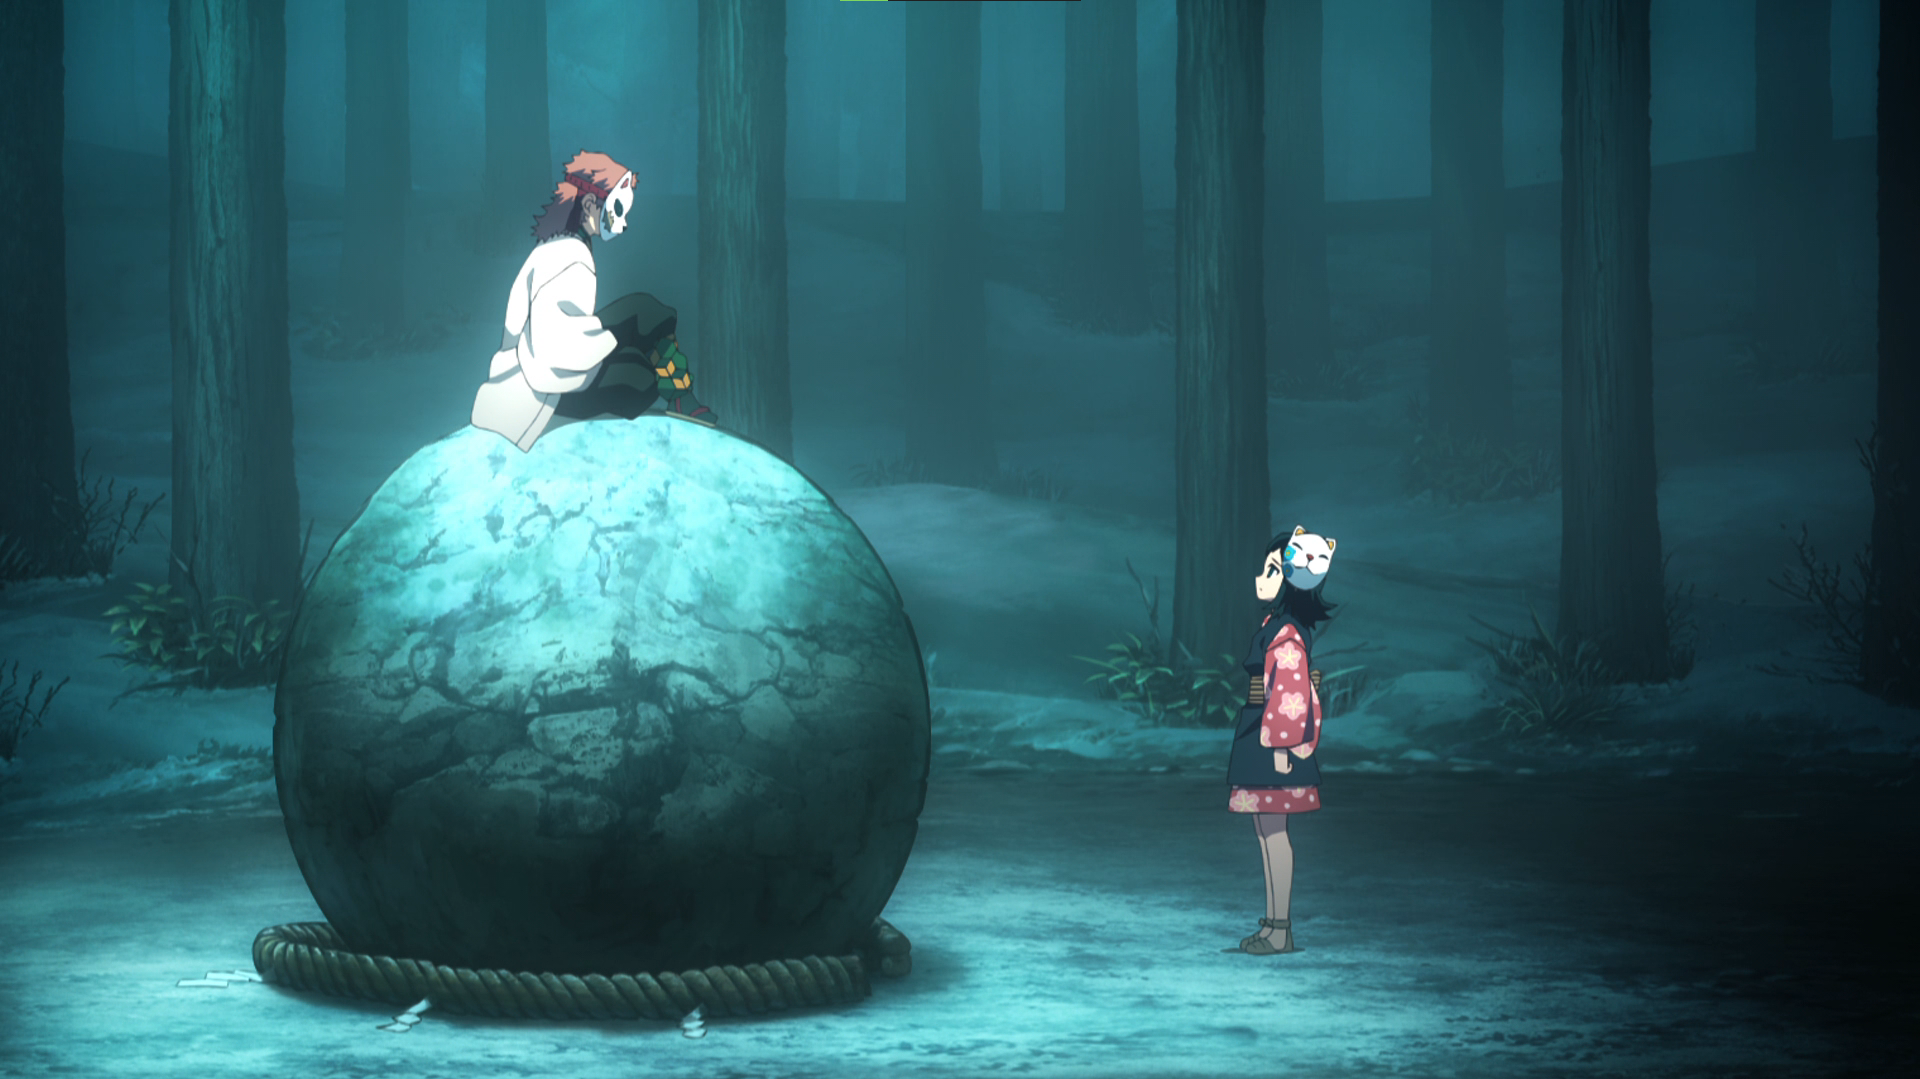 Anime Diet - That boulder got more screen time than Tenten | Facebook